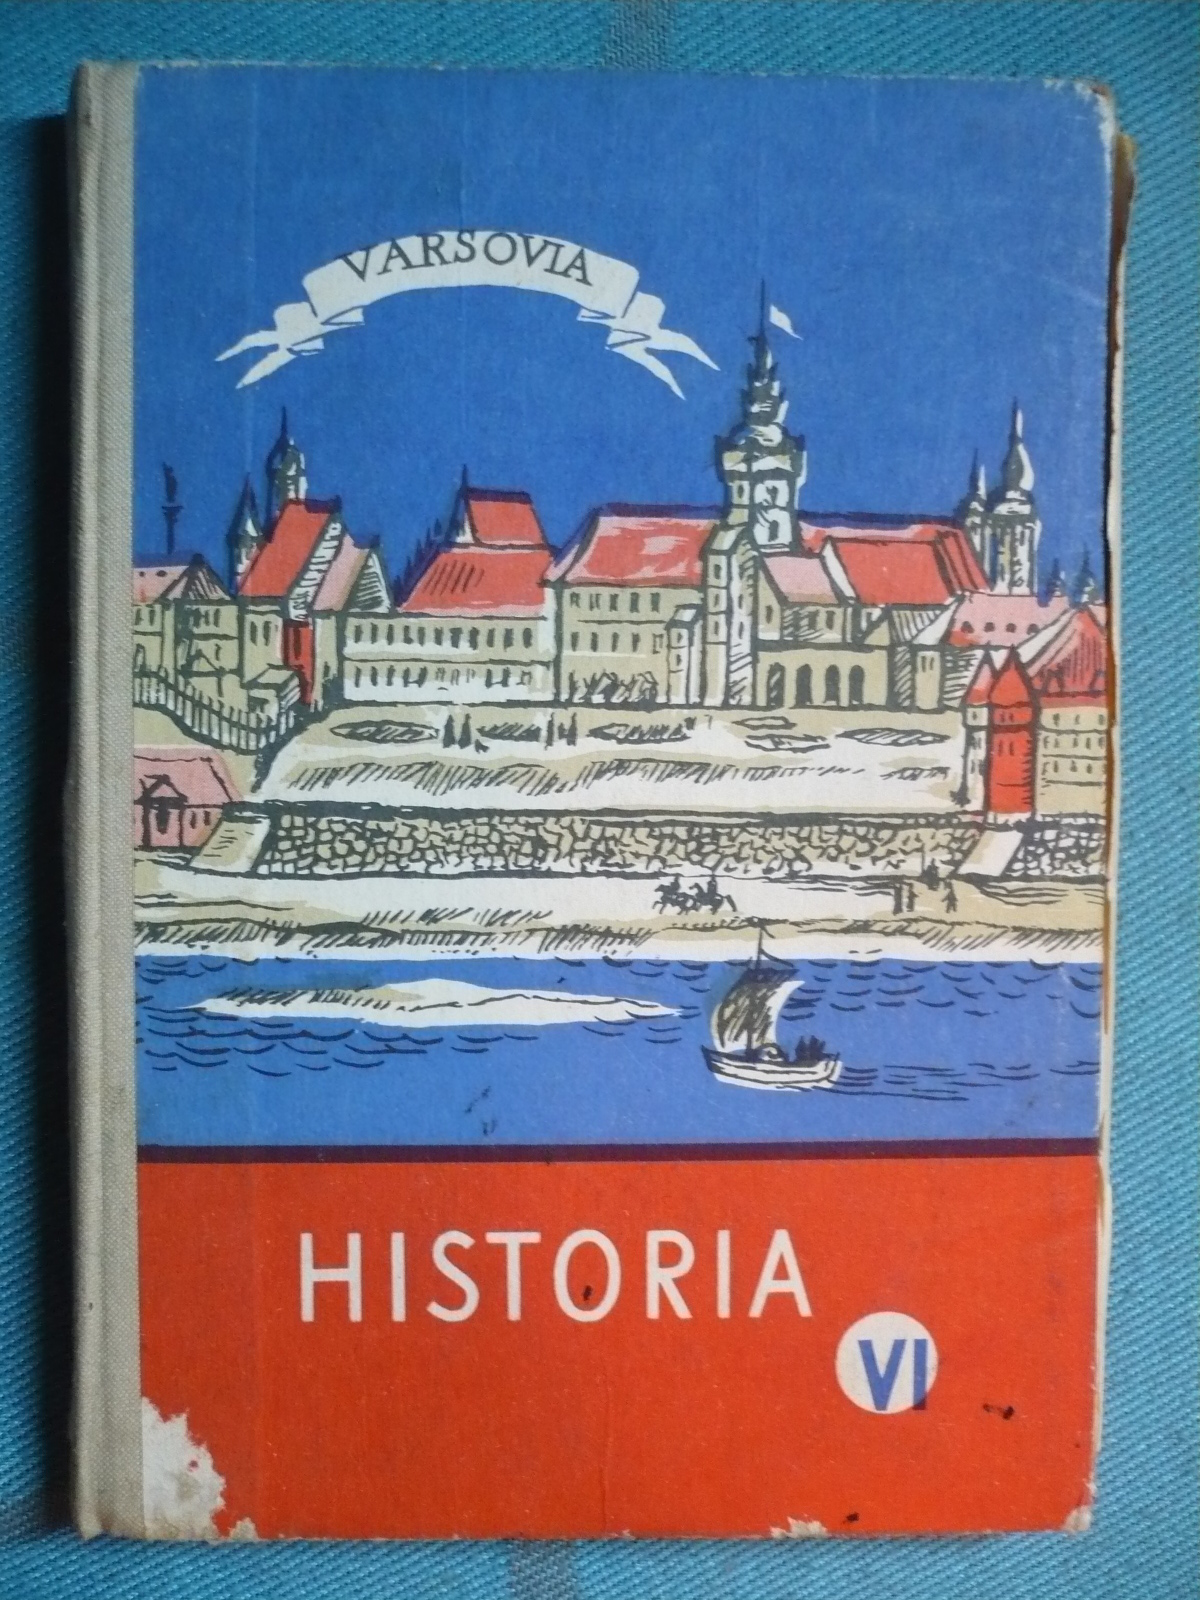 Historia Kl. VI (1973).JPG